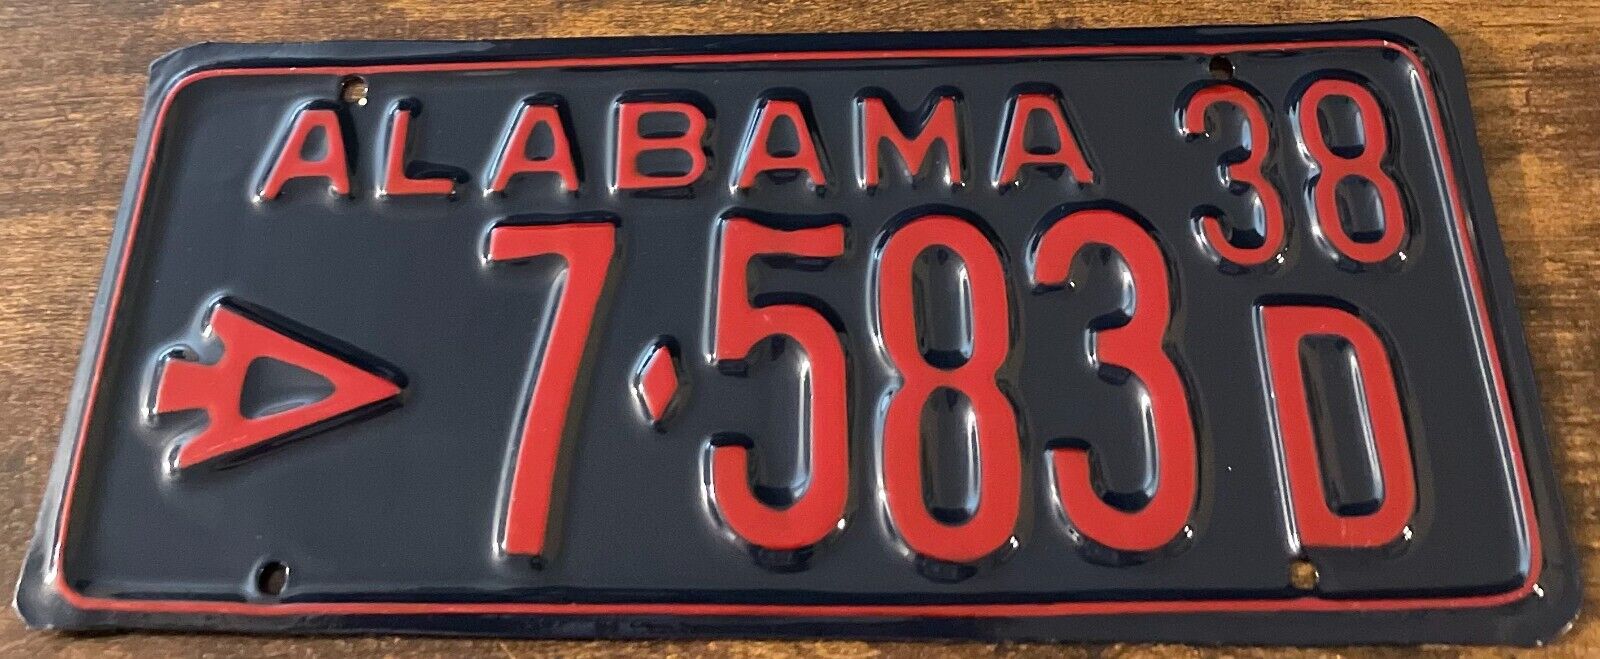 Vintage 1938 Alabama License Plate 7-583 D With Arrow Arrowhead